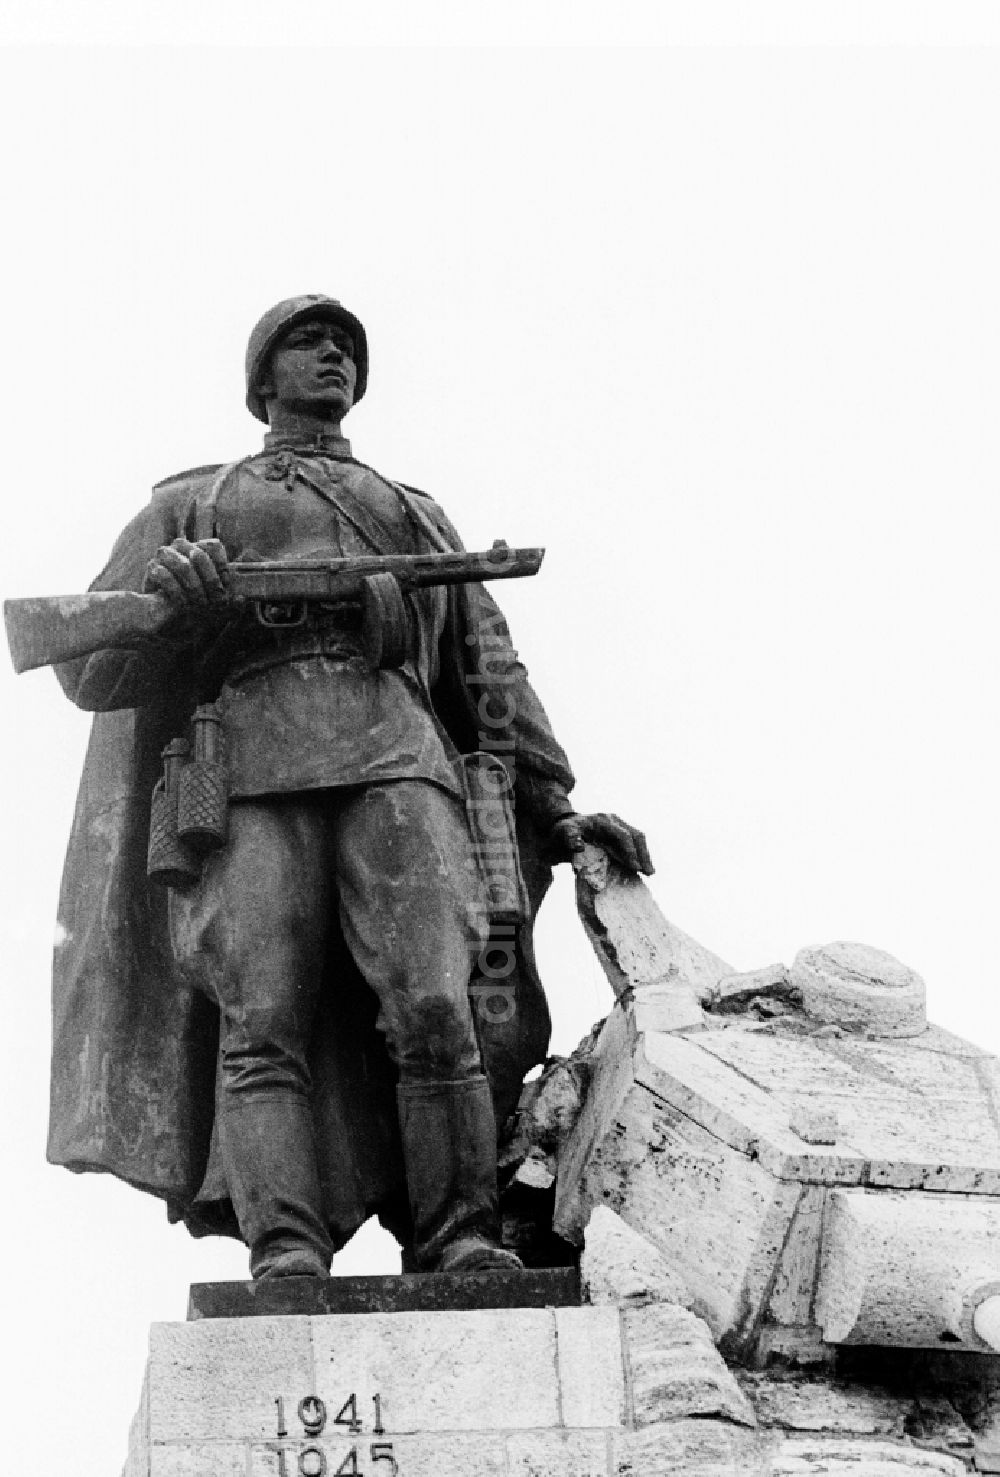 DDR-Fotoarchiv: Seelow - Denkmal für die gefallenen russischen Soldaten, von Lew Kerbel, in der Gedenkstätte Seelower Höhen in Seelow im heutigen Bundesland Brandenburg